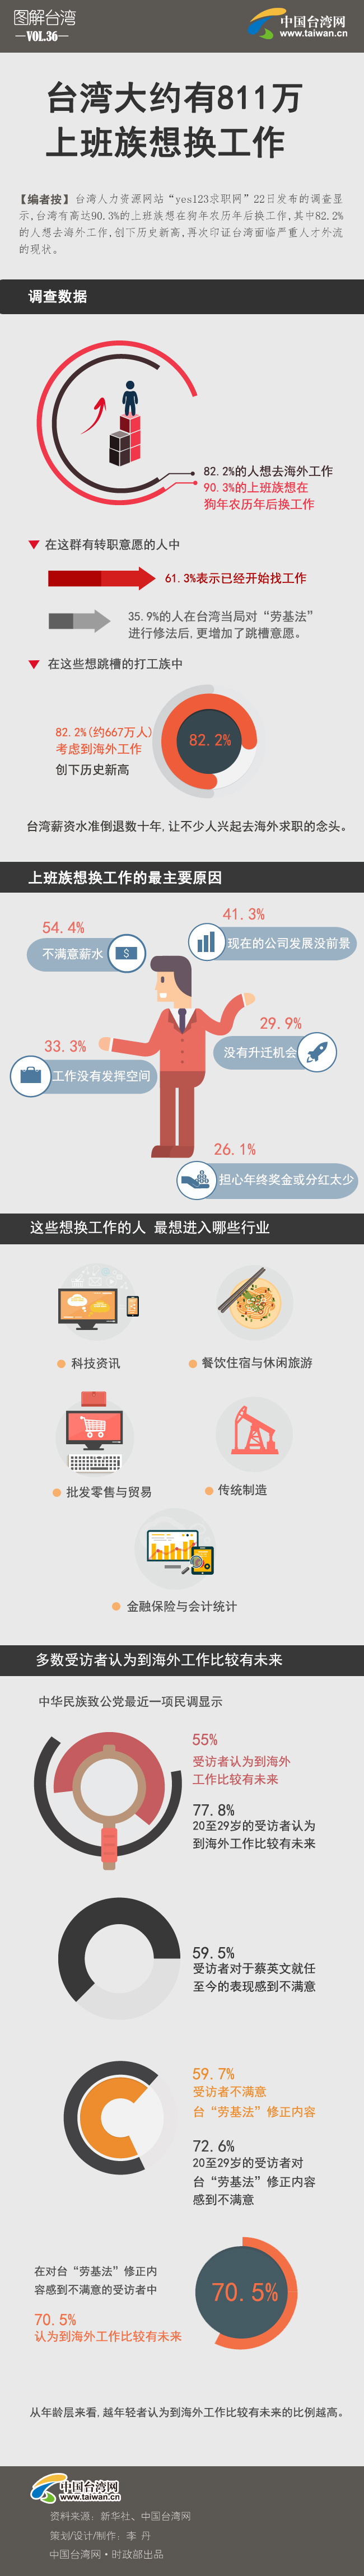 台灣大約有811萬上班族想換工作